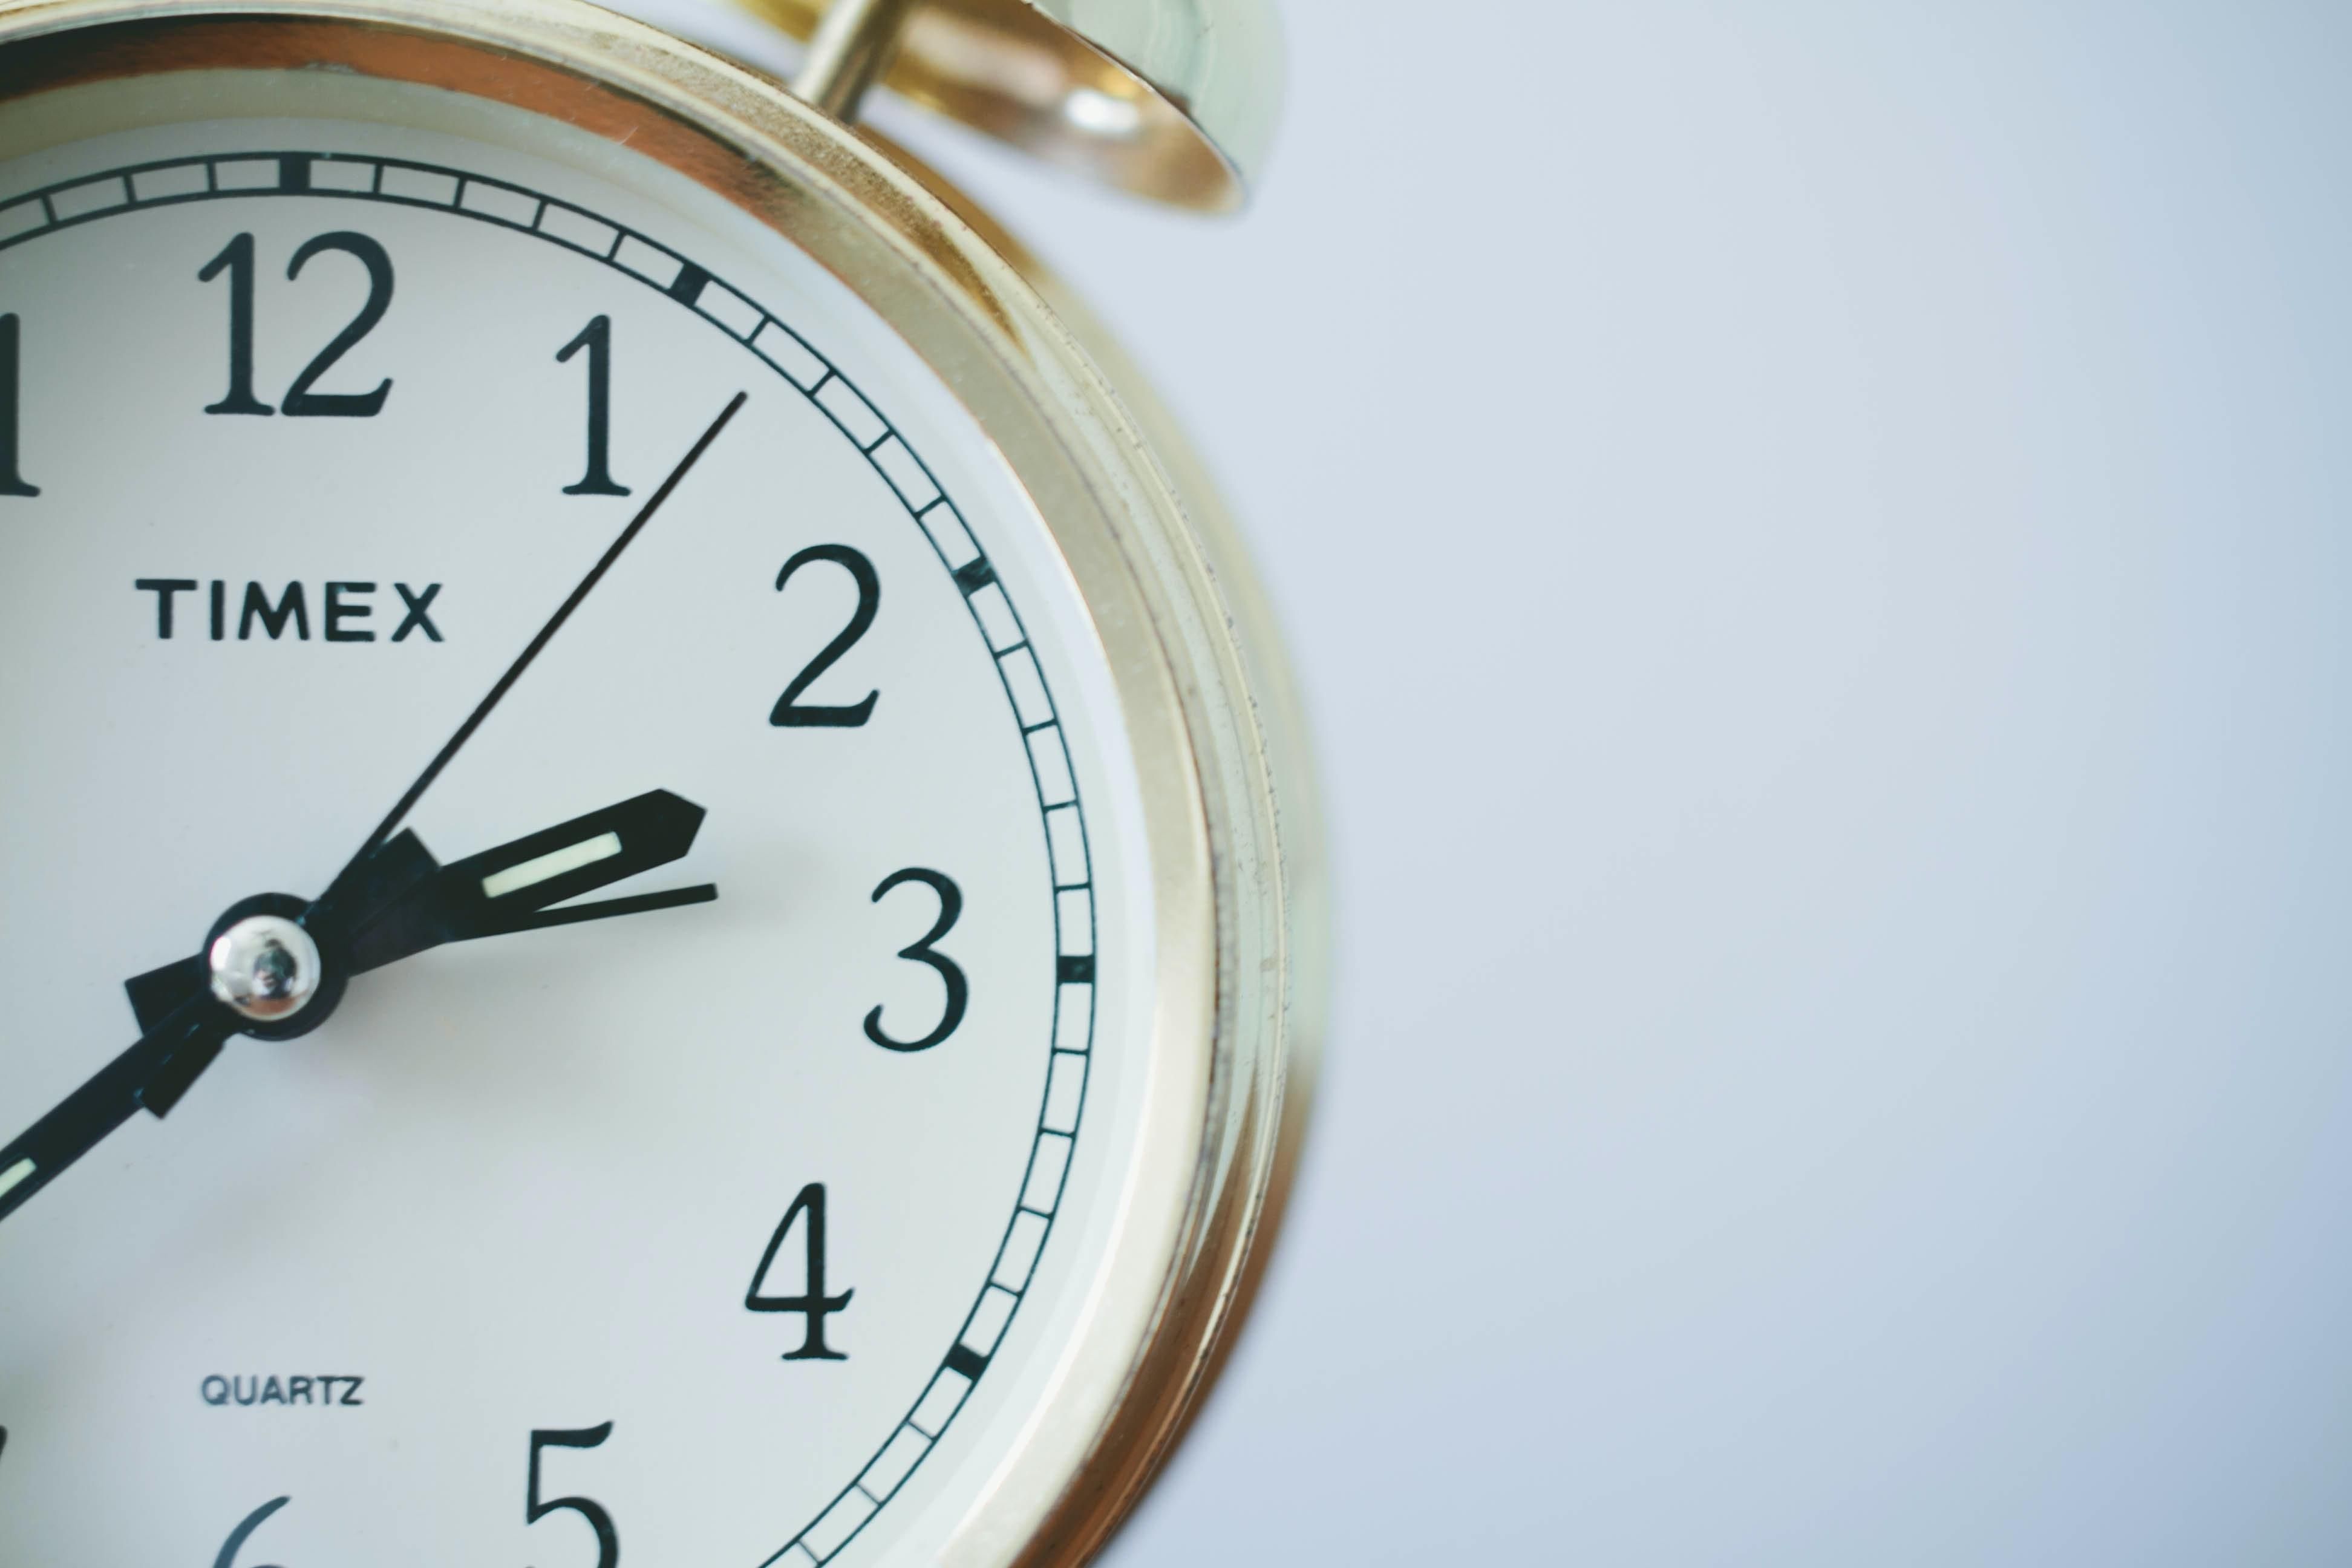 Ученые предлагают сократить минуту до 59 секунд